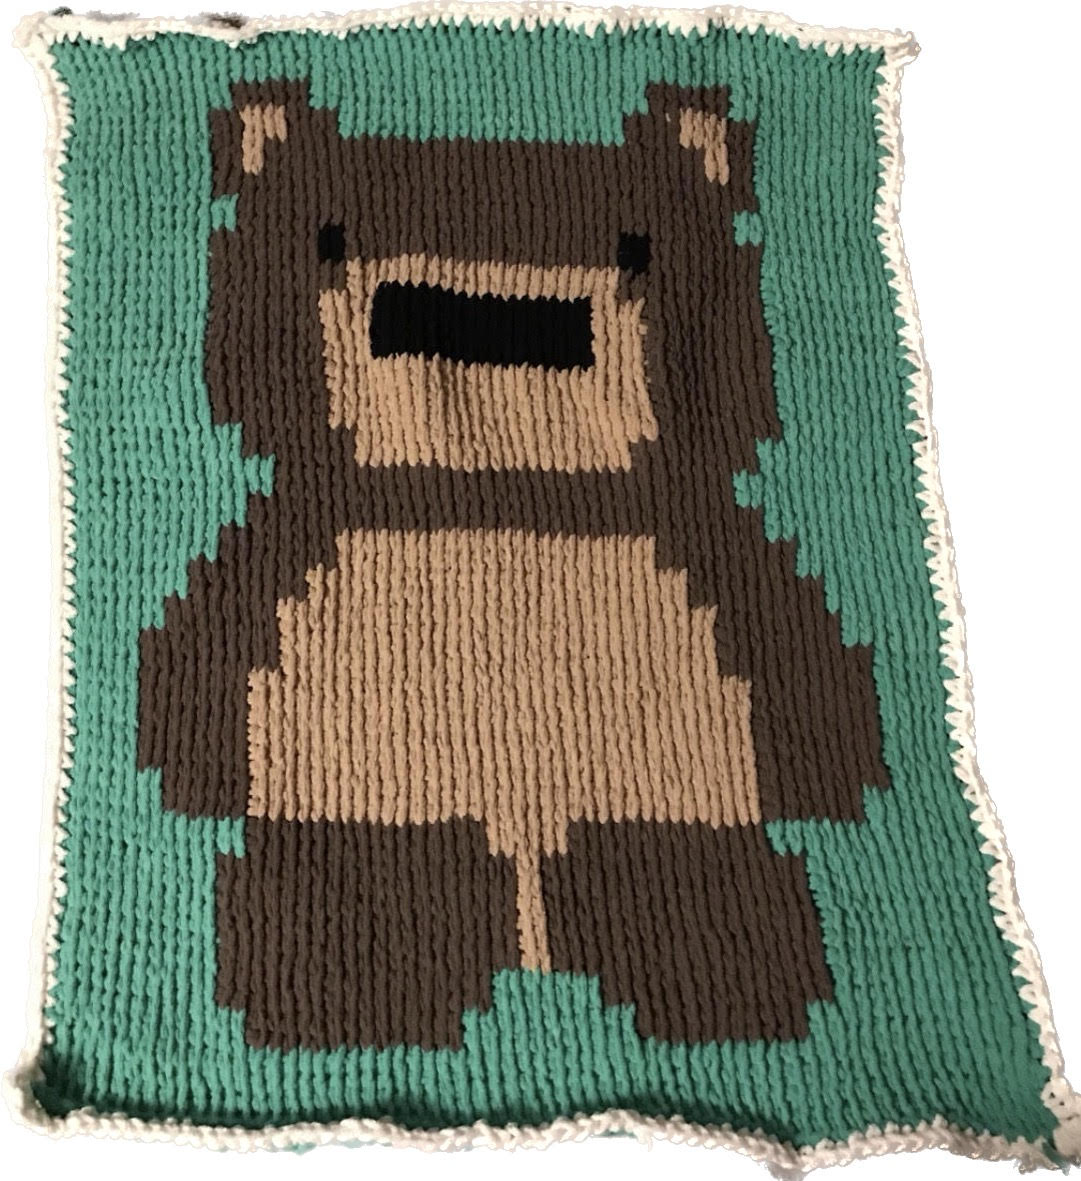 Bear 3